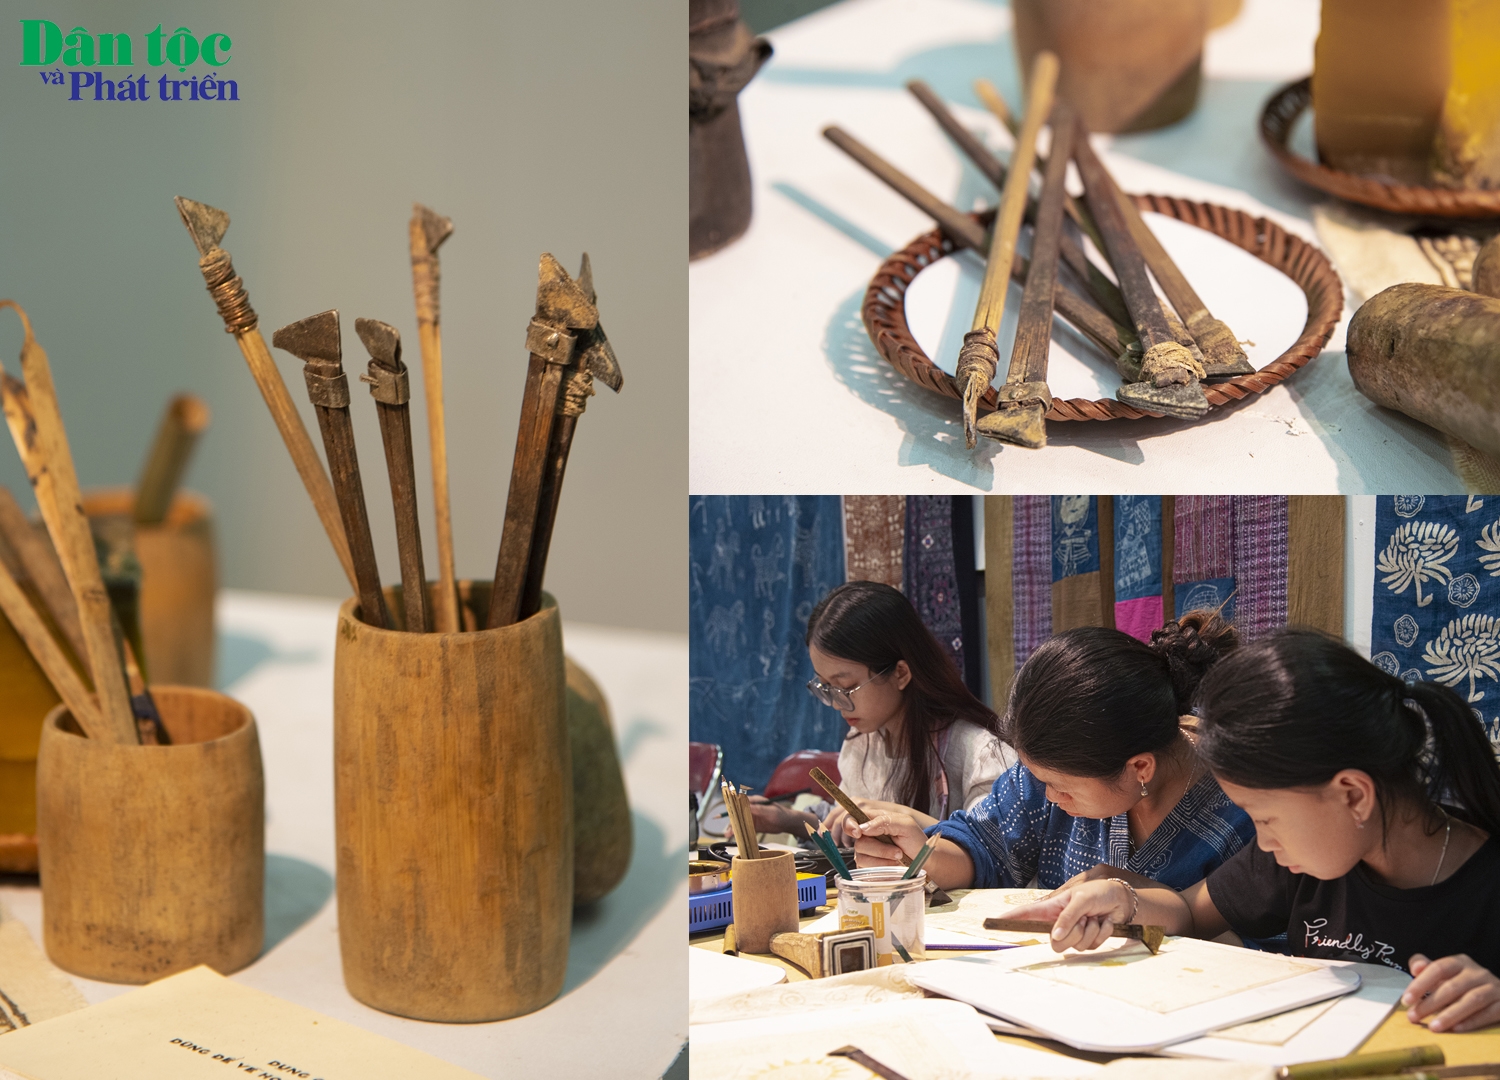 Dụng cụ để vẽ hoa văn được gọi là bút vẽ. Với người dân tộc Mông, bút vẽ có cán làm bằng tre. Ngòi được tạo bời các miếng đồng hình thang chéo nhau, có khoang trống nhỏ để chứa sáp.